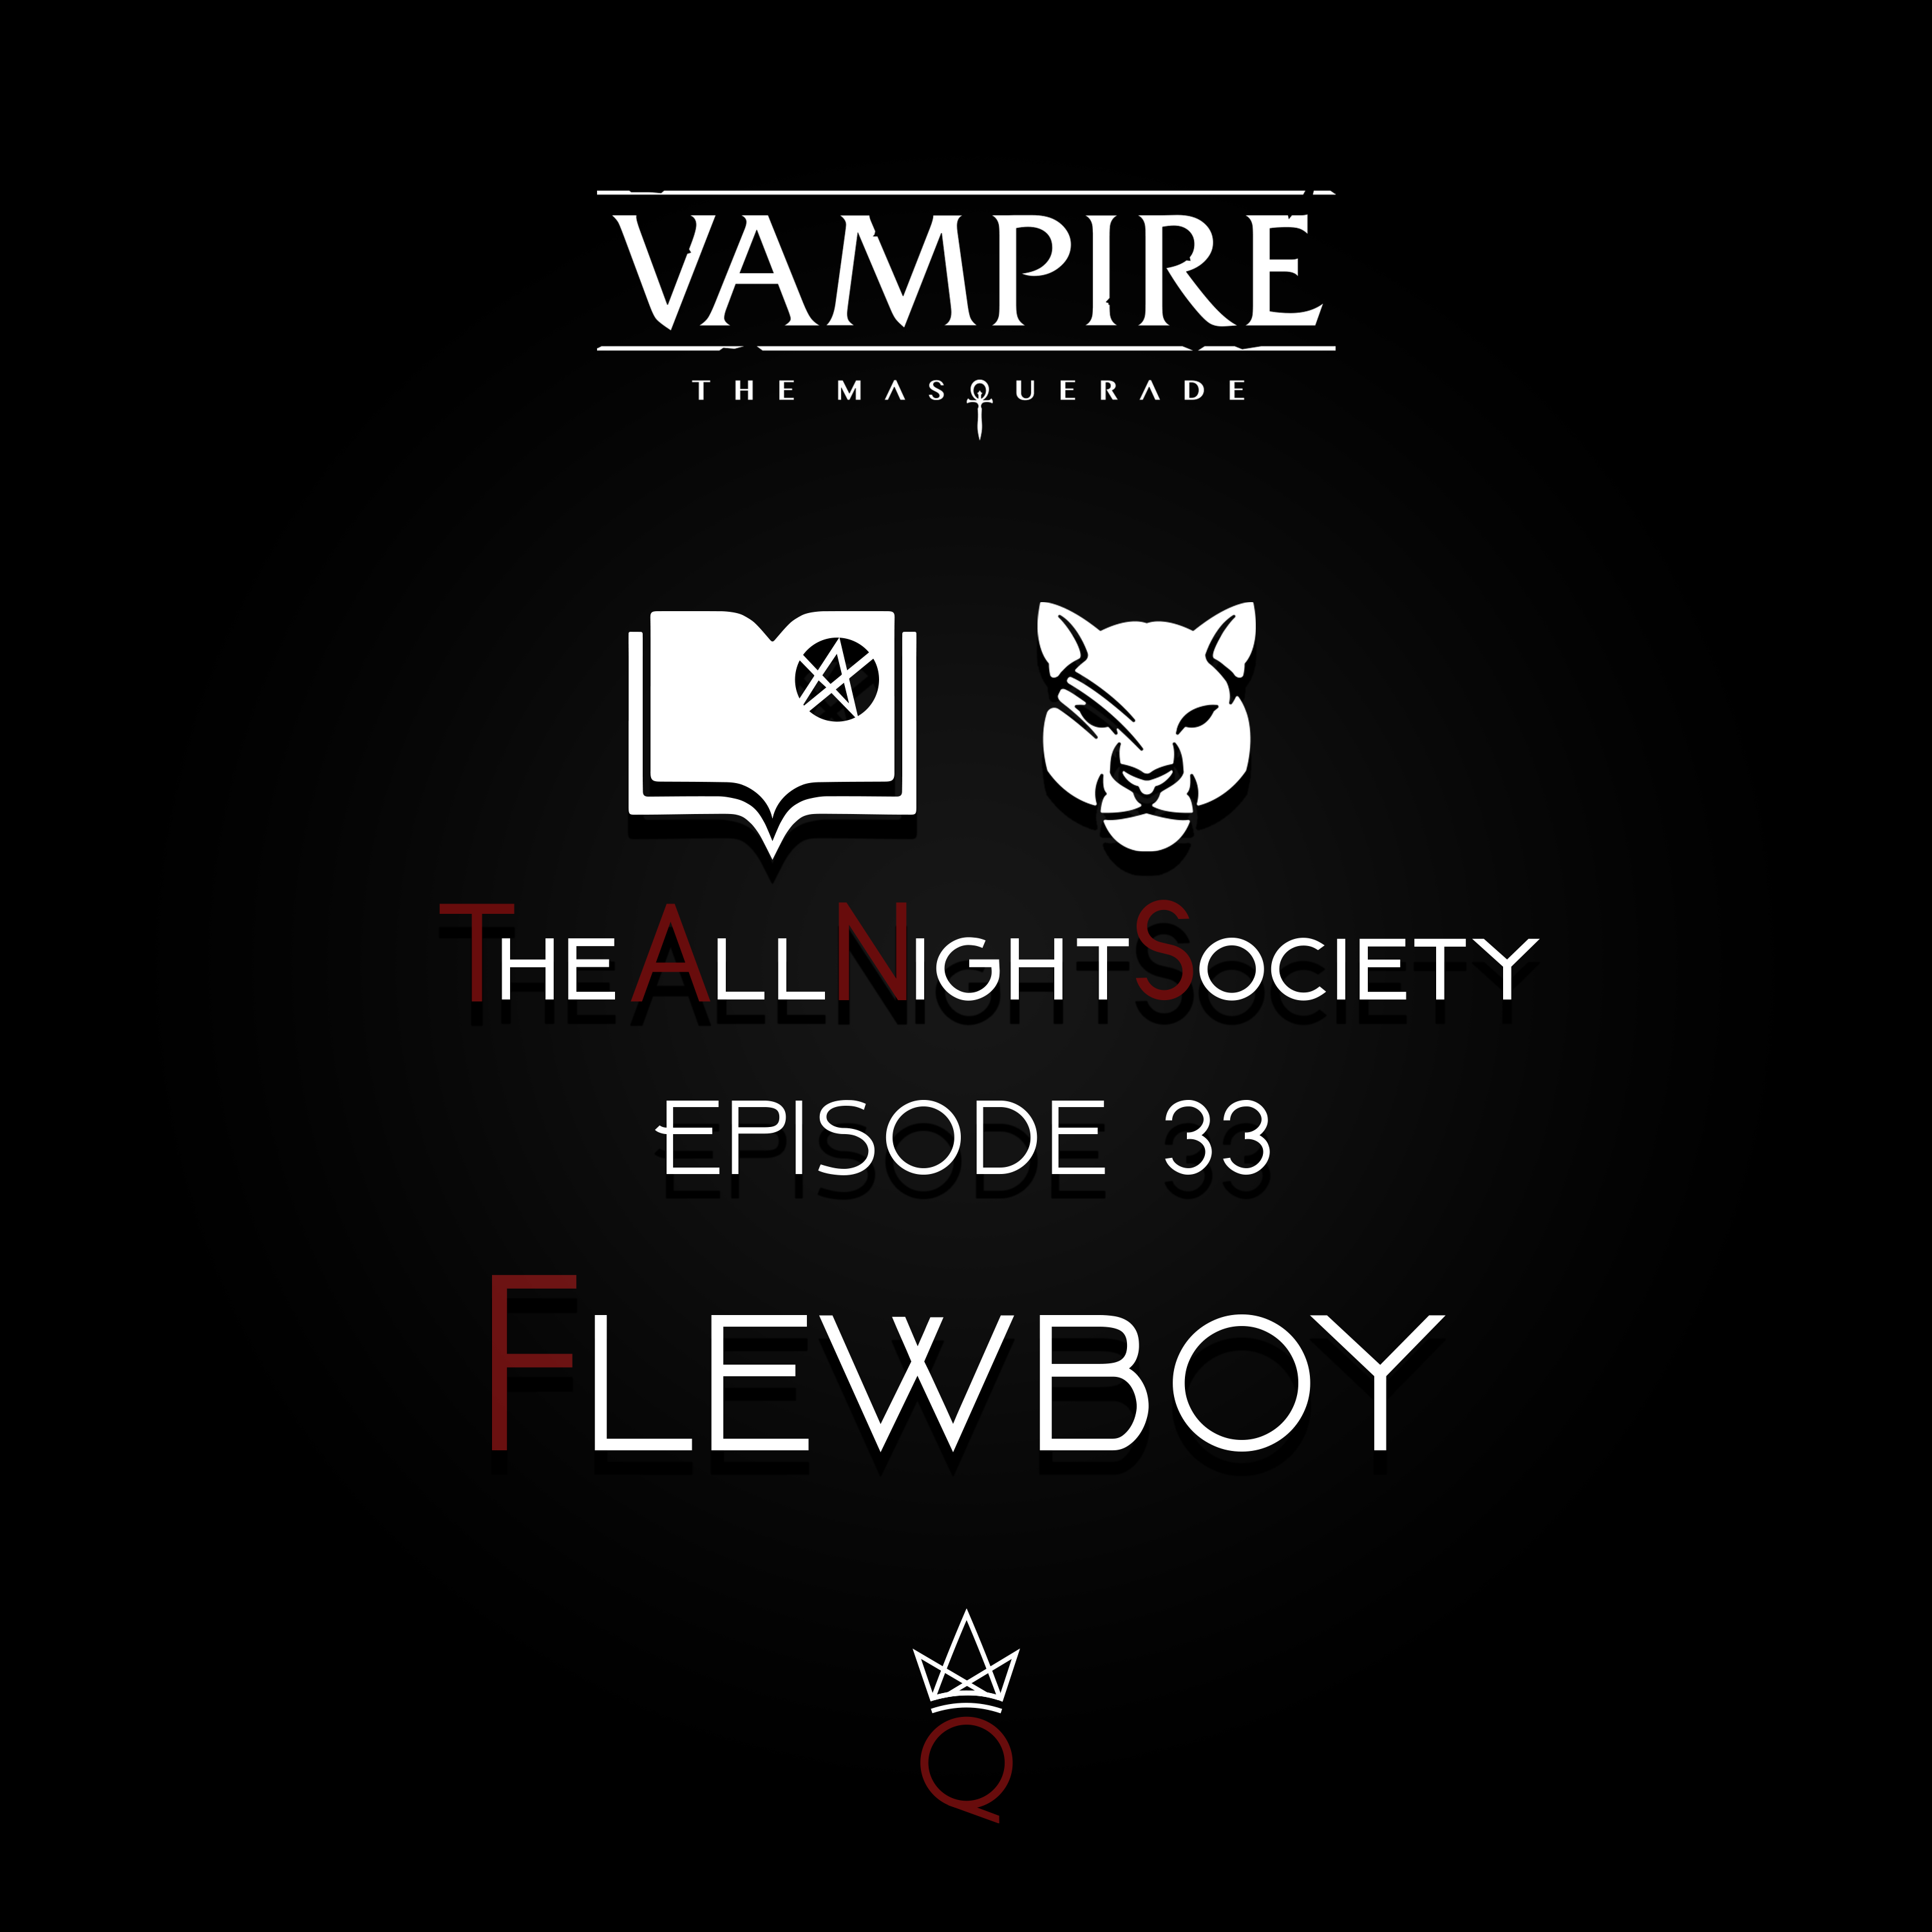 Episode 33 - Flewboy